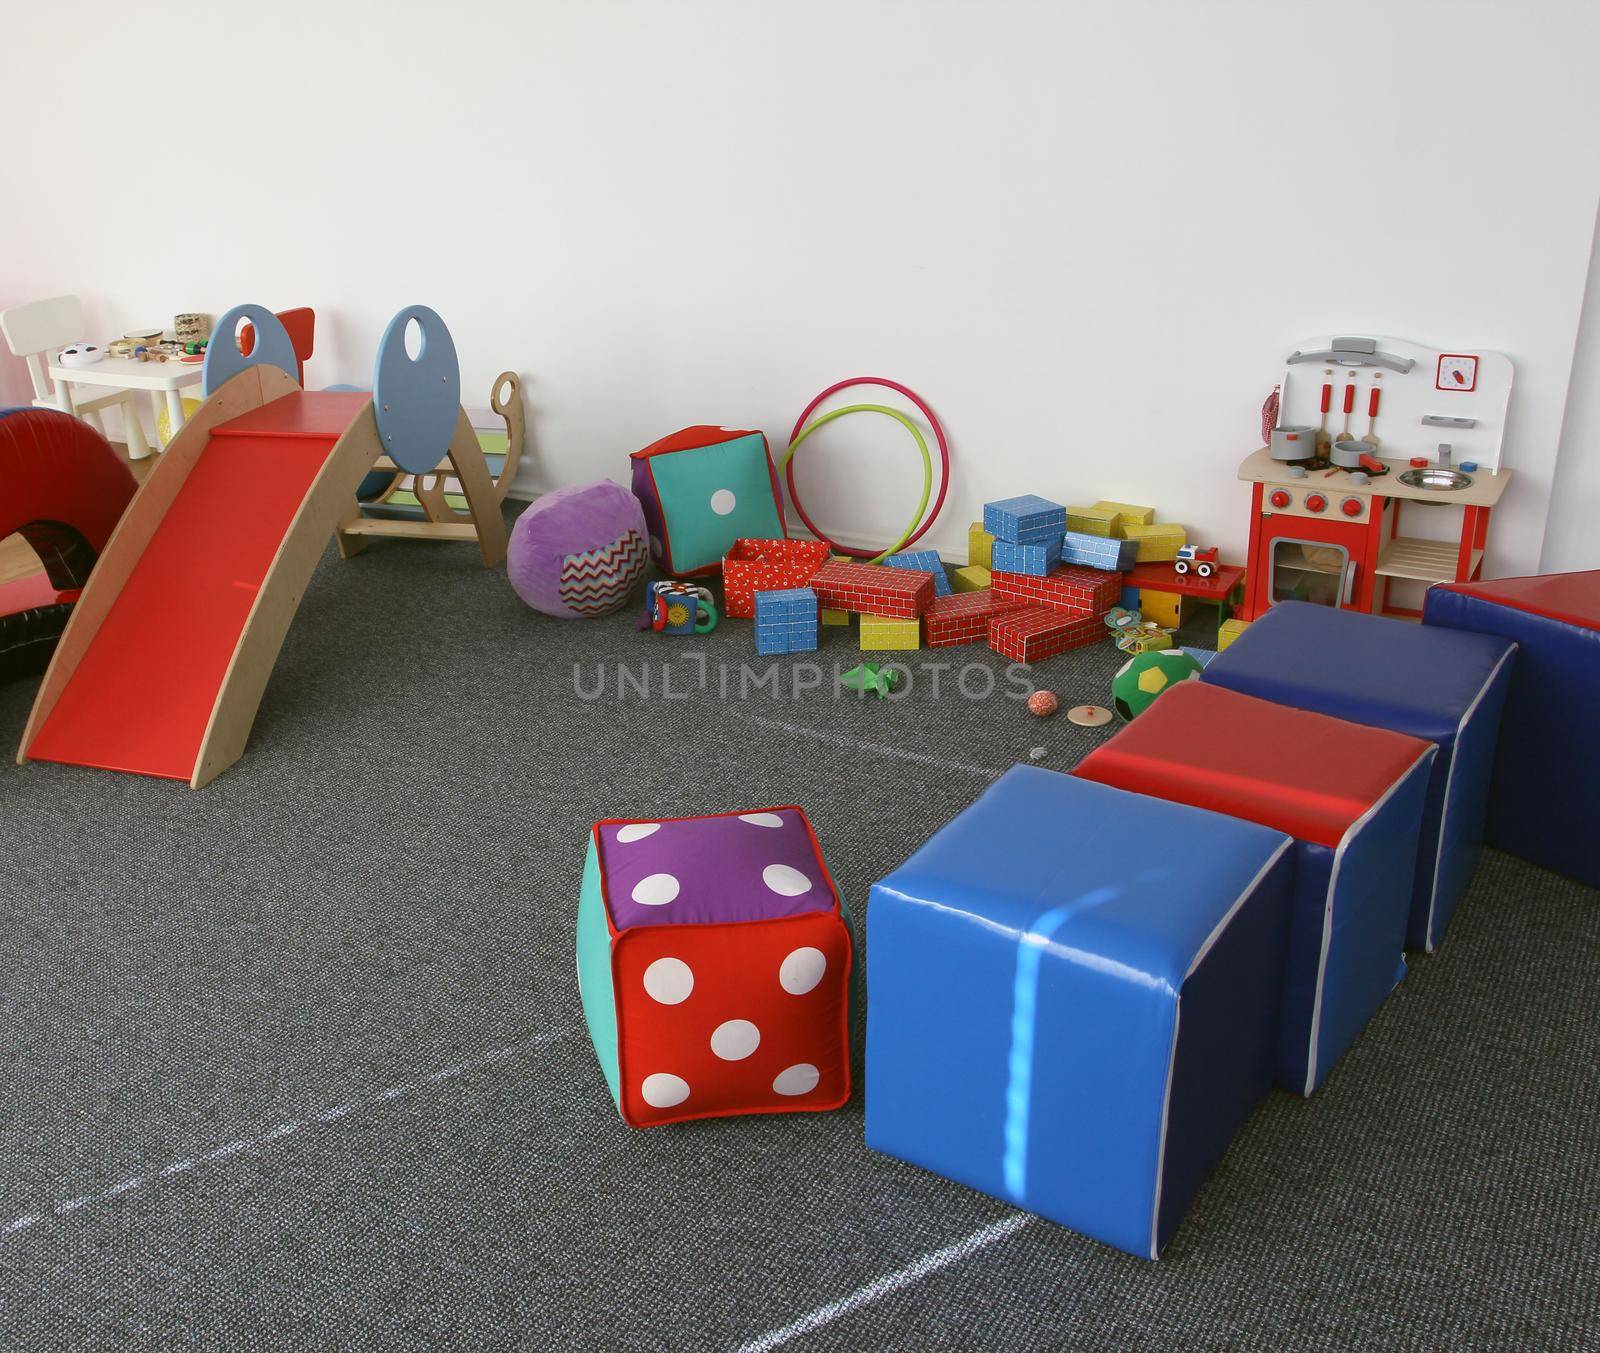 Indoor playground by Lirch